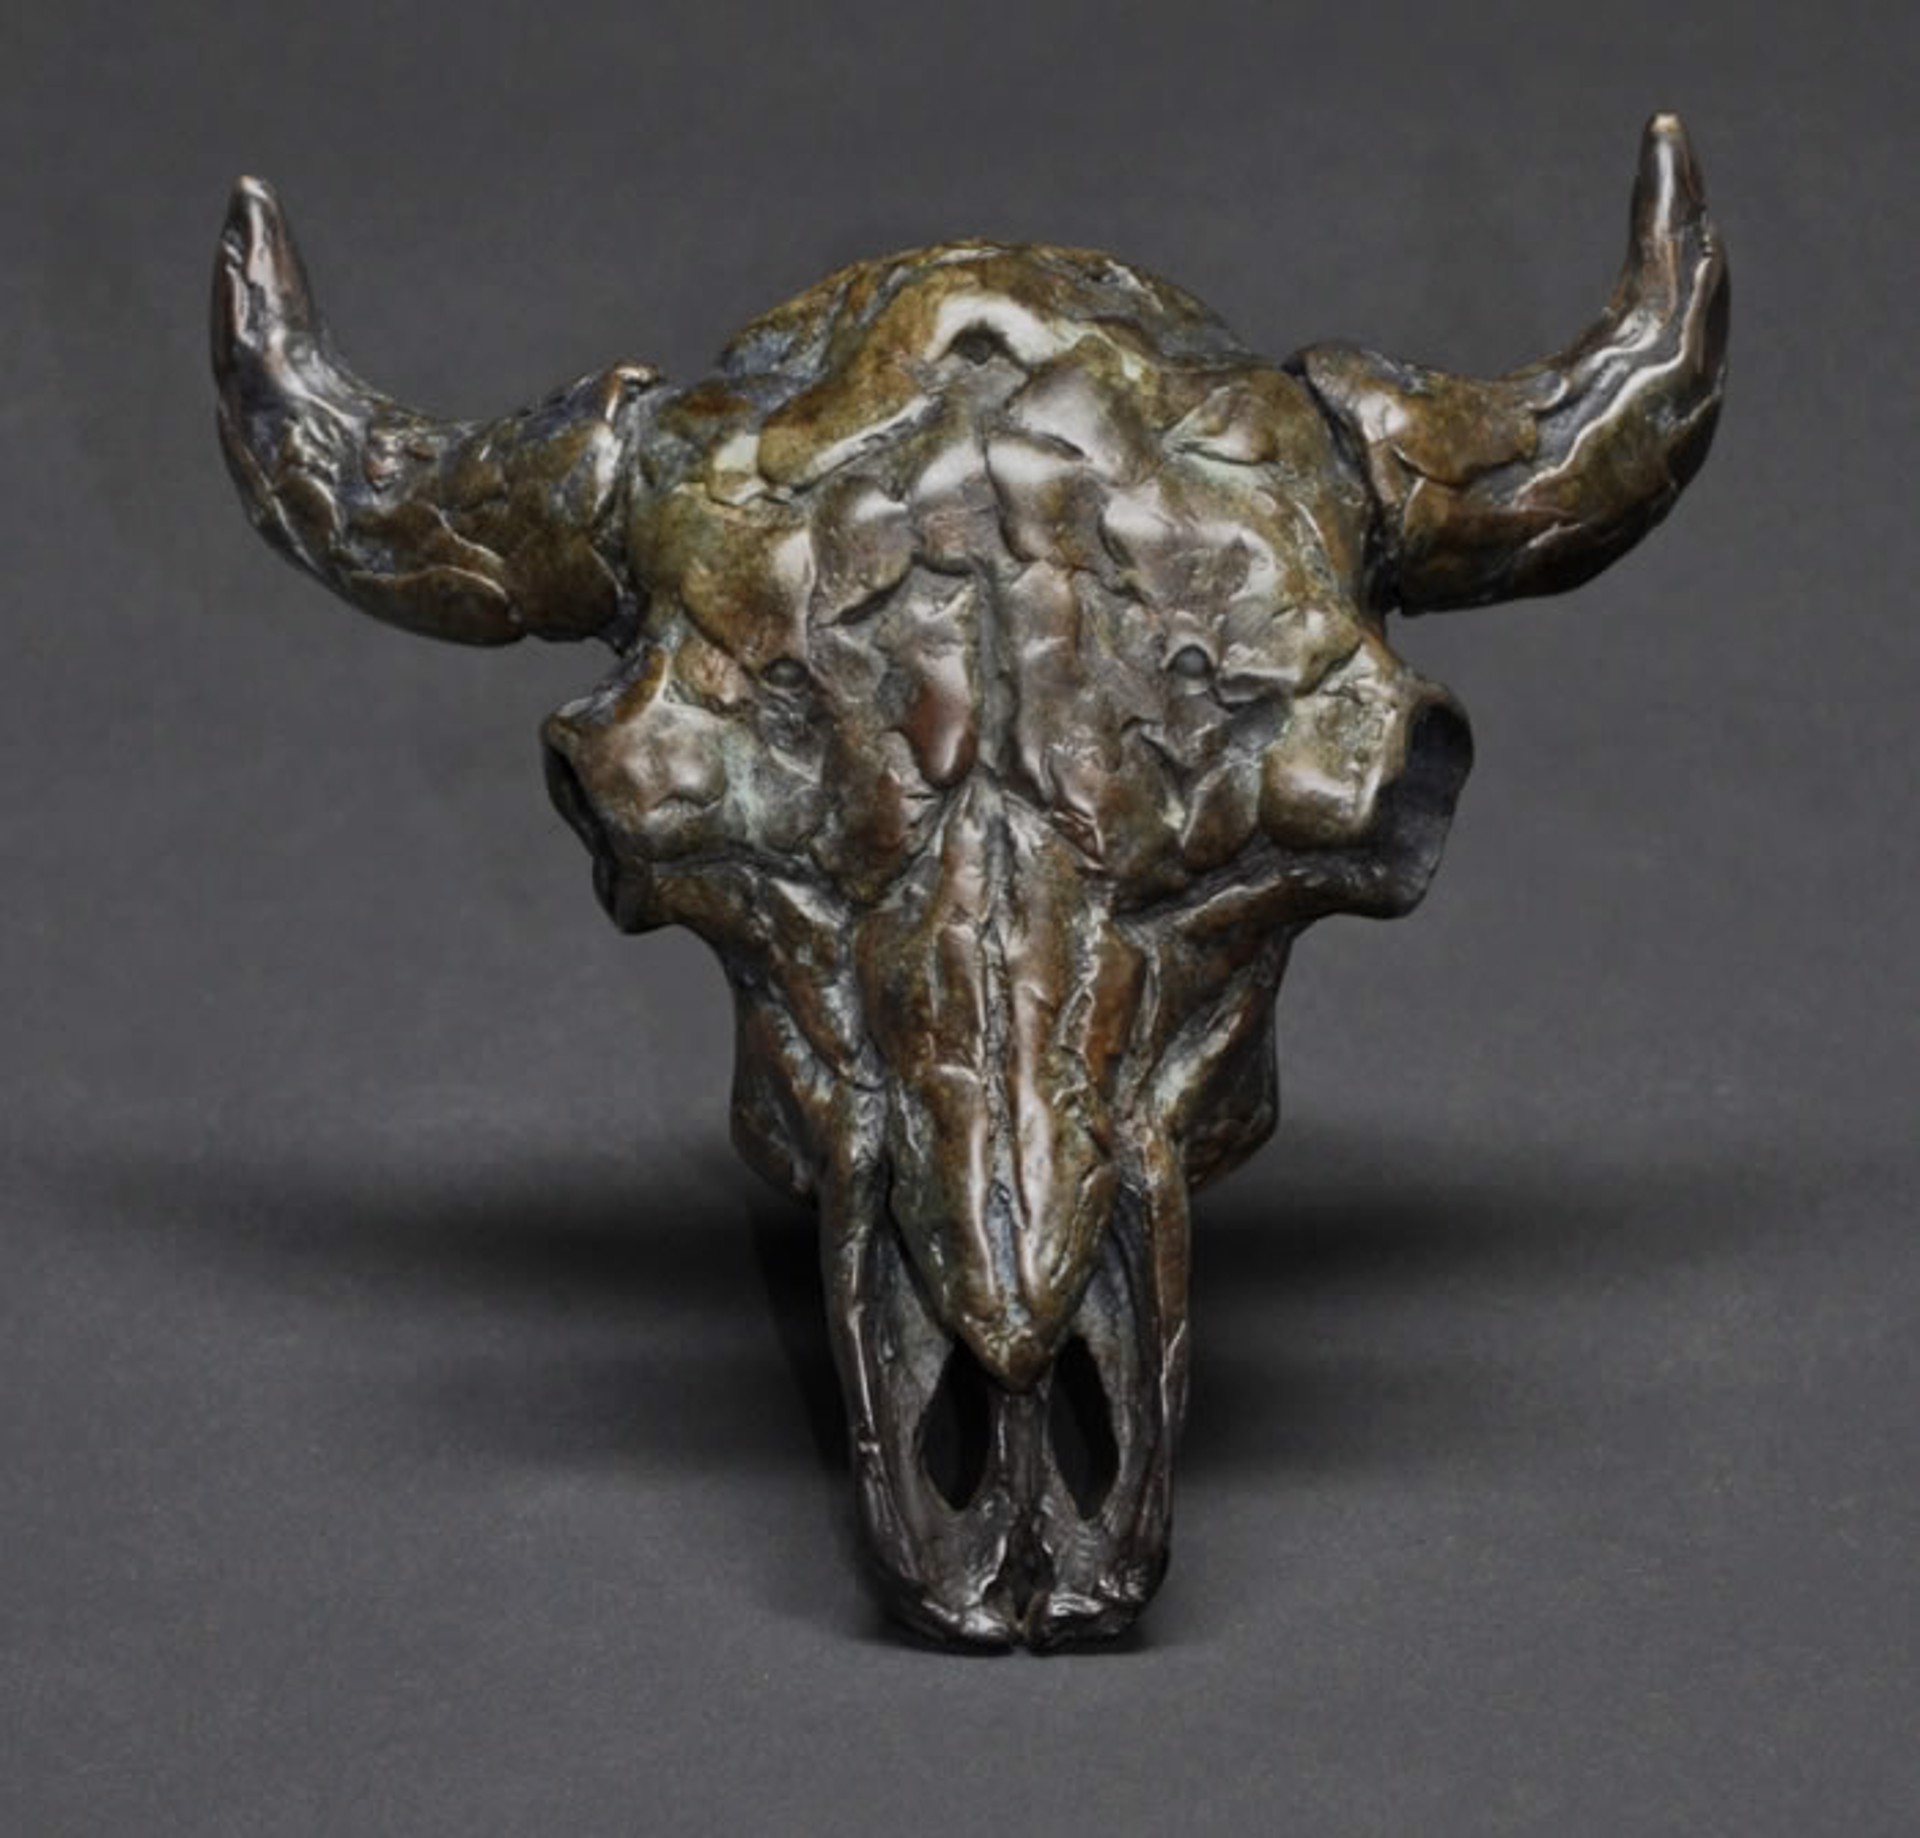 Bison Skull by Mick Doellinger